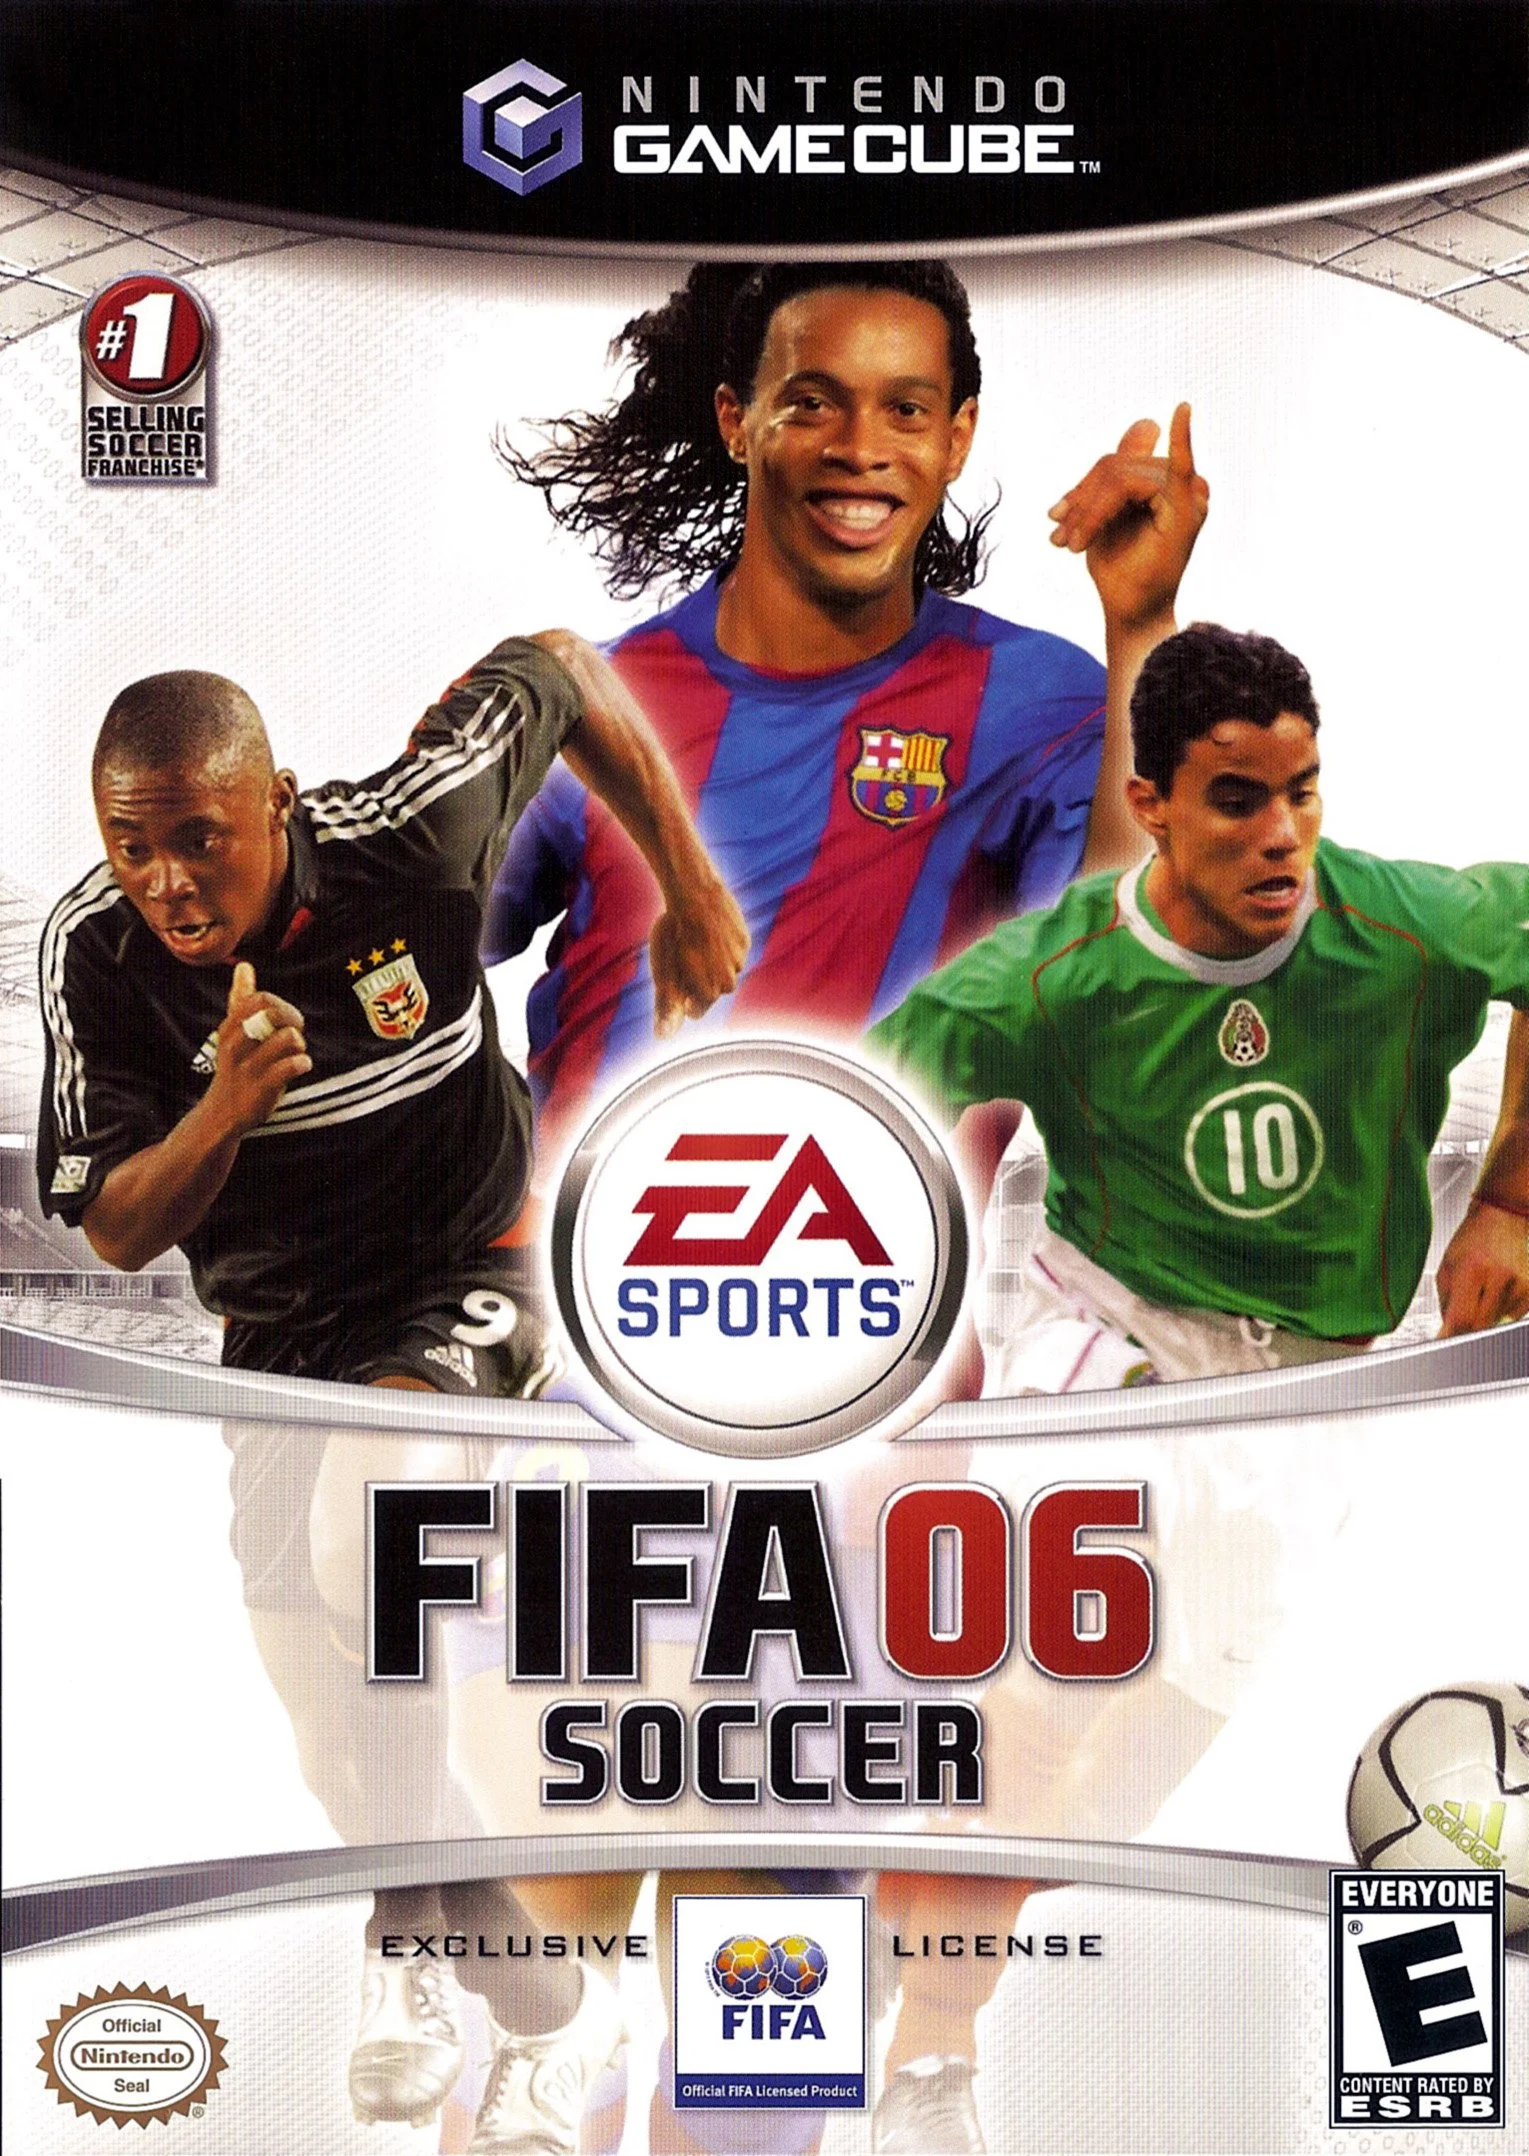 Fifa soccer. FIFA Soccer 06. FIFA Soccer 06 GAMECUBE. FIFA Football 2005 обложка. ФИФА 06 обложка.